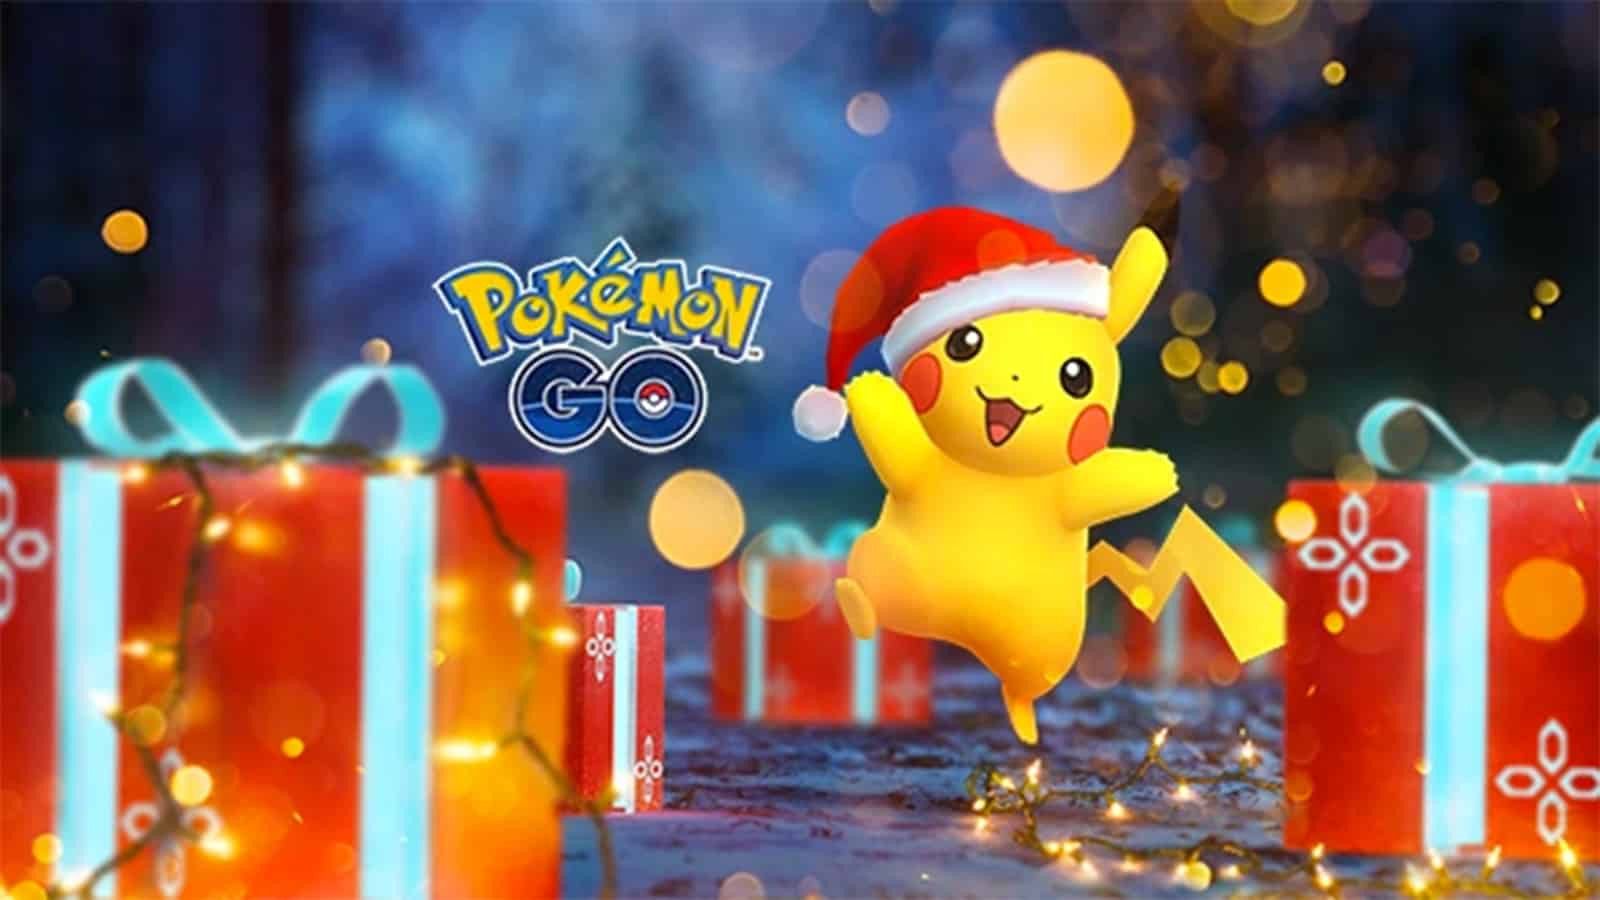 Pokémon GO Holidays 2021 - Leek Duck